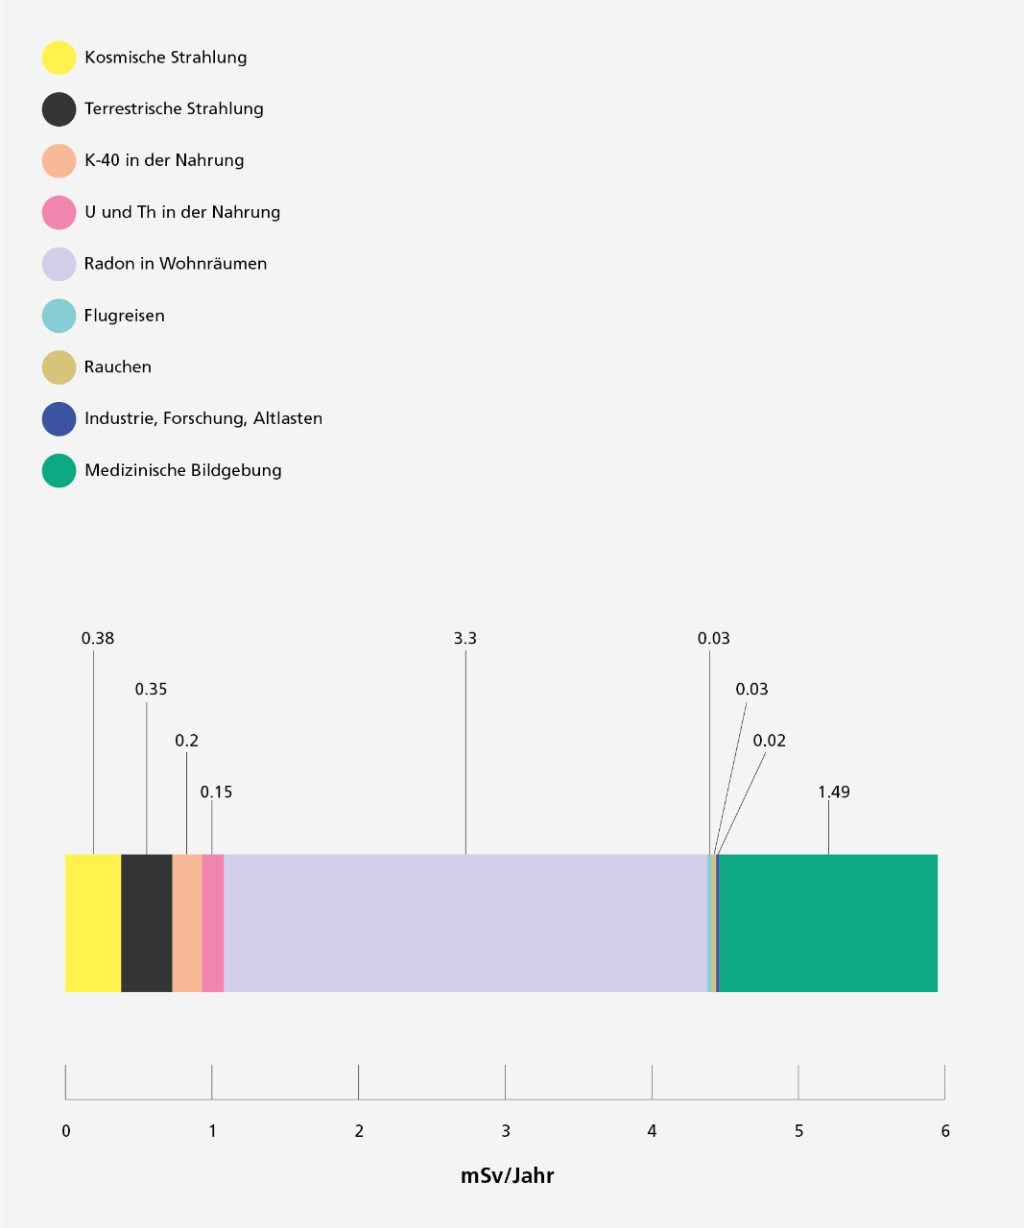 Die Abbildung zeigt die Durchschnittswerte der verschiedenen Beiträge zur effektiven Dosis (in mSv) pro Jahr und Einwohner in der Schweiz als farbige Streifen auf einem Balken. Die kosmische Strahlung macht 0.38 mSv pro Jahr aus, die terrestrische Strahlung 0.35 mSv, Kalium-40 in der Nahrung 0.2 mSv, Uran und Thorium in der Nahrung 0.15 mSv, Radon in Wohnräumen 3.3 mSv (es dominiert bei weitem), Flugreisen und Rauchen je 0.03 mSv und Abgaben aus Industrie, Krankenhäuser und Forschung 0.02 mSv pro Jahr. Die medizinische Bildgebung trägt mit durchschnittlich 1.49 mSv pro Jahr bei.